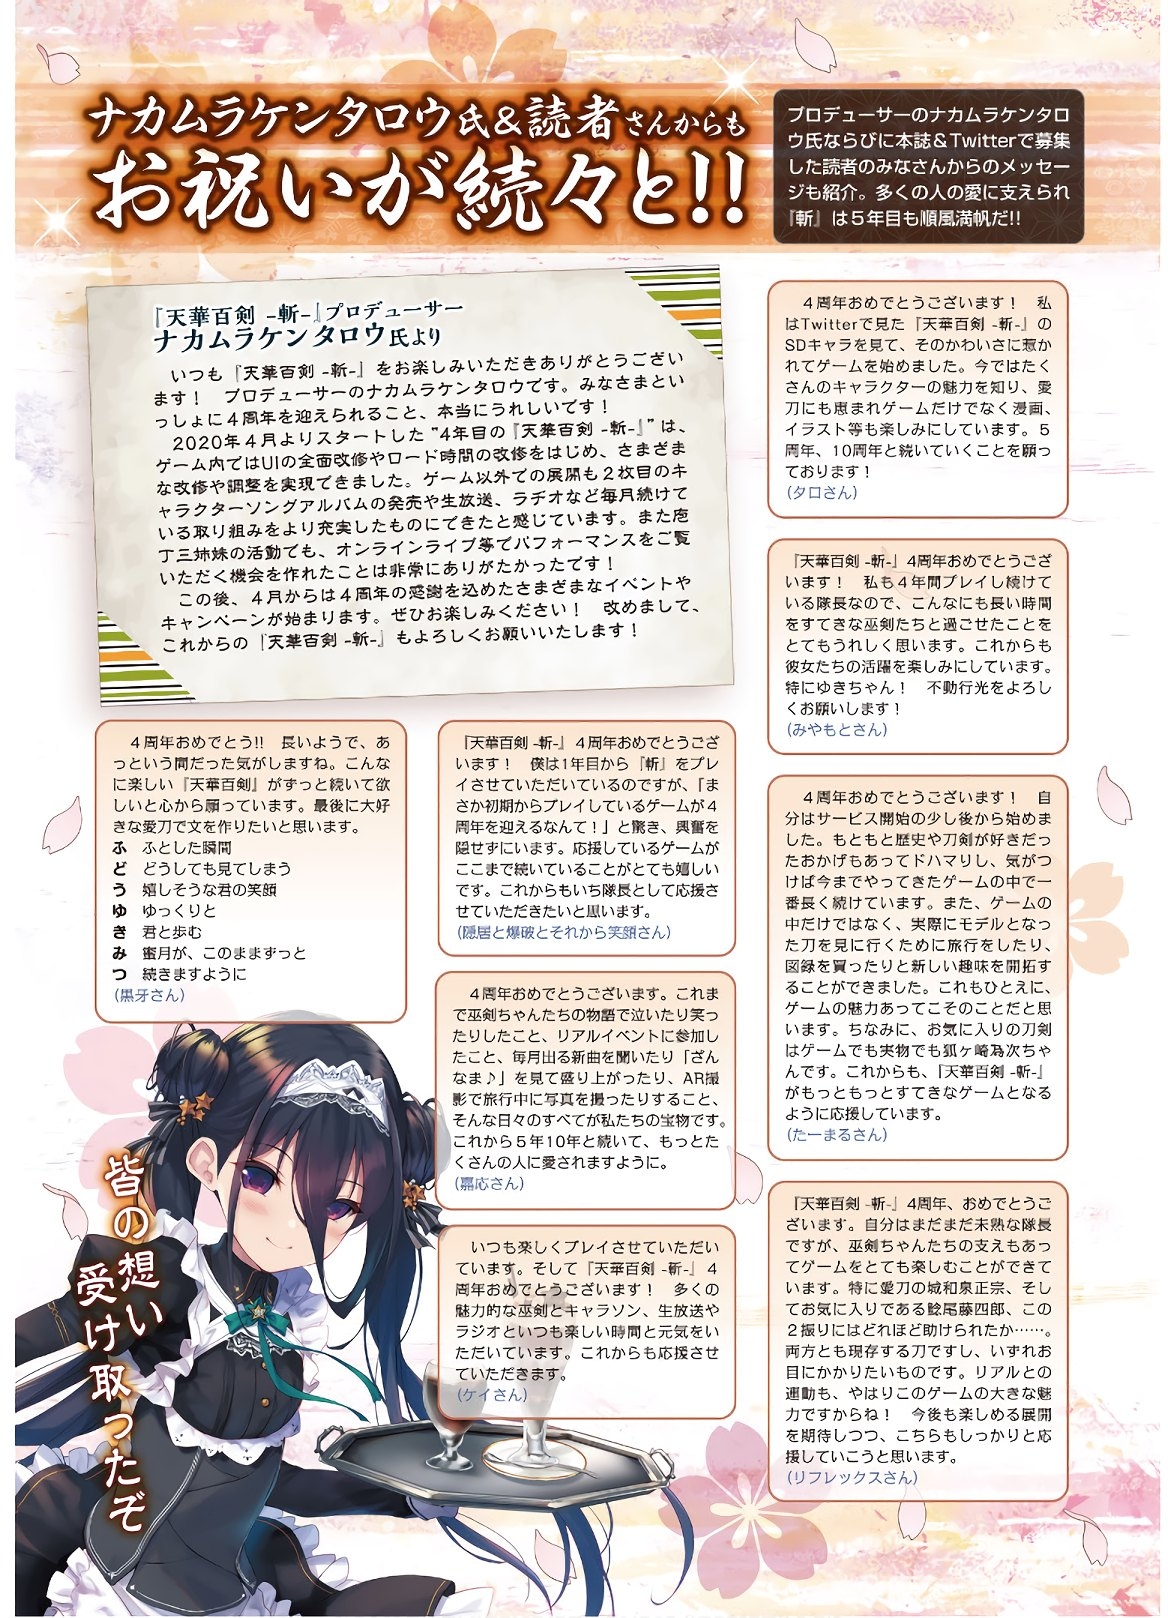 Dengeki G's Magazine #286 - May 2021 14